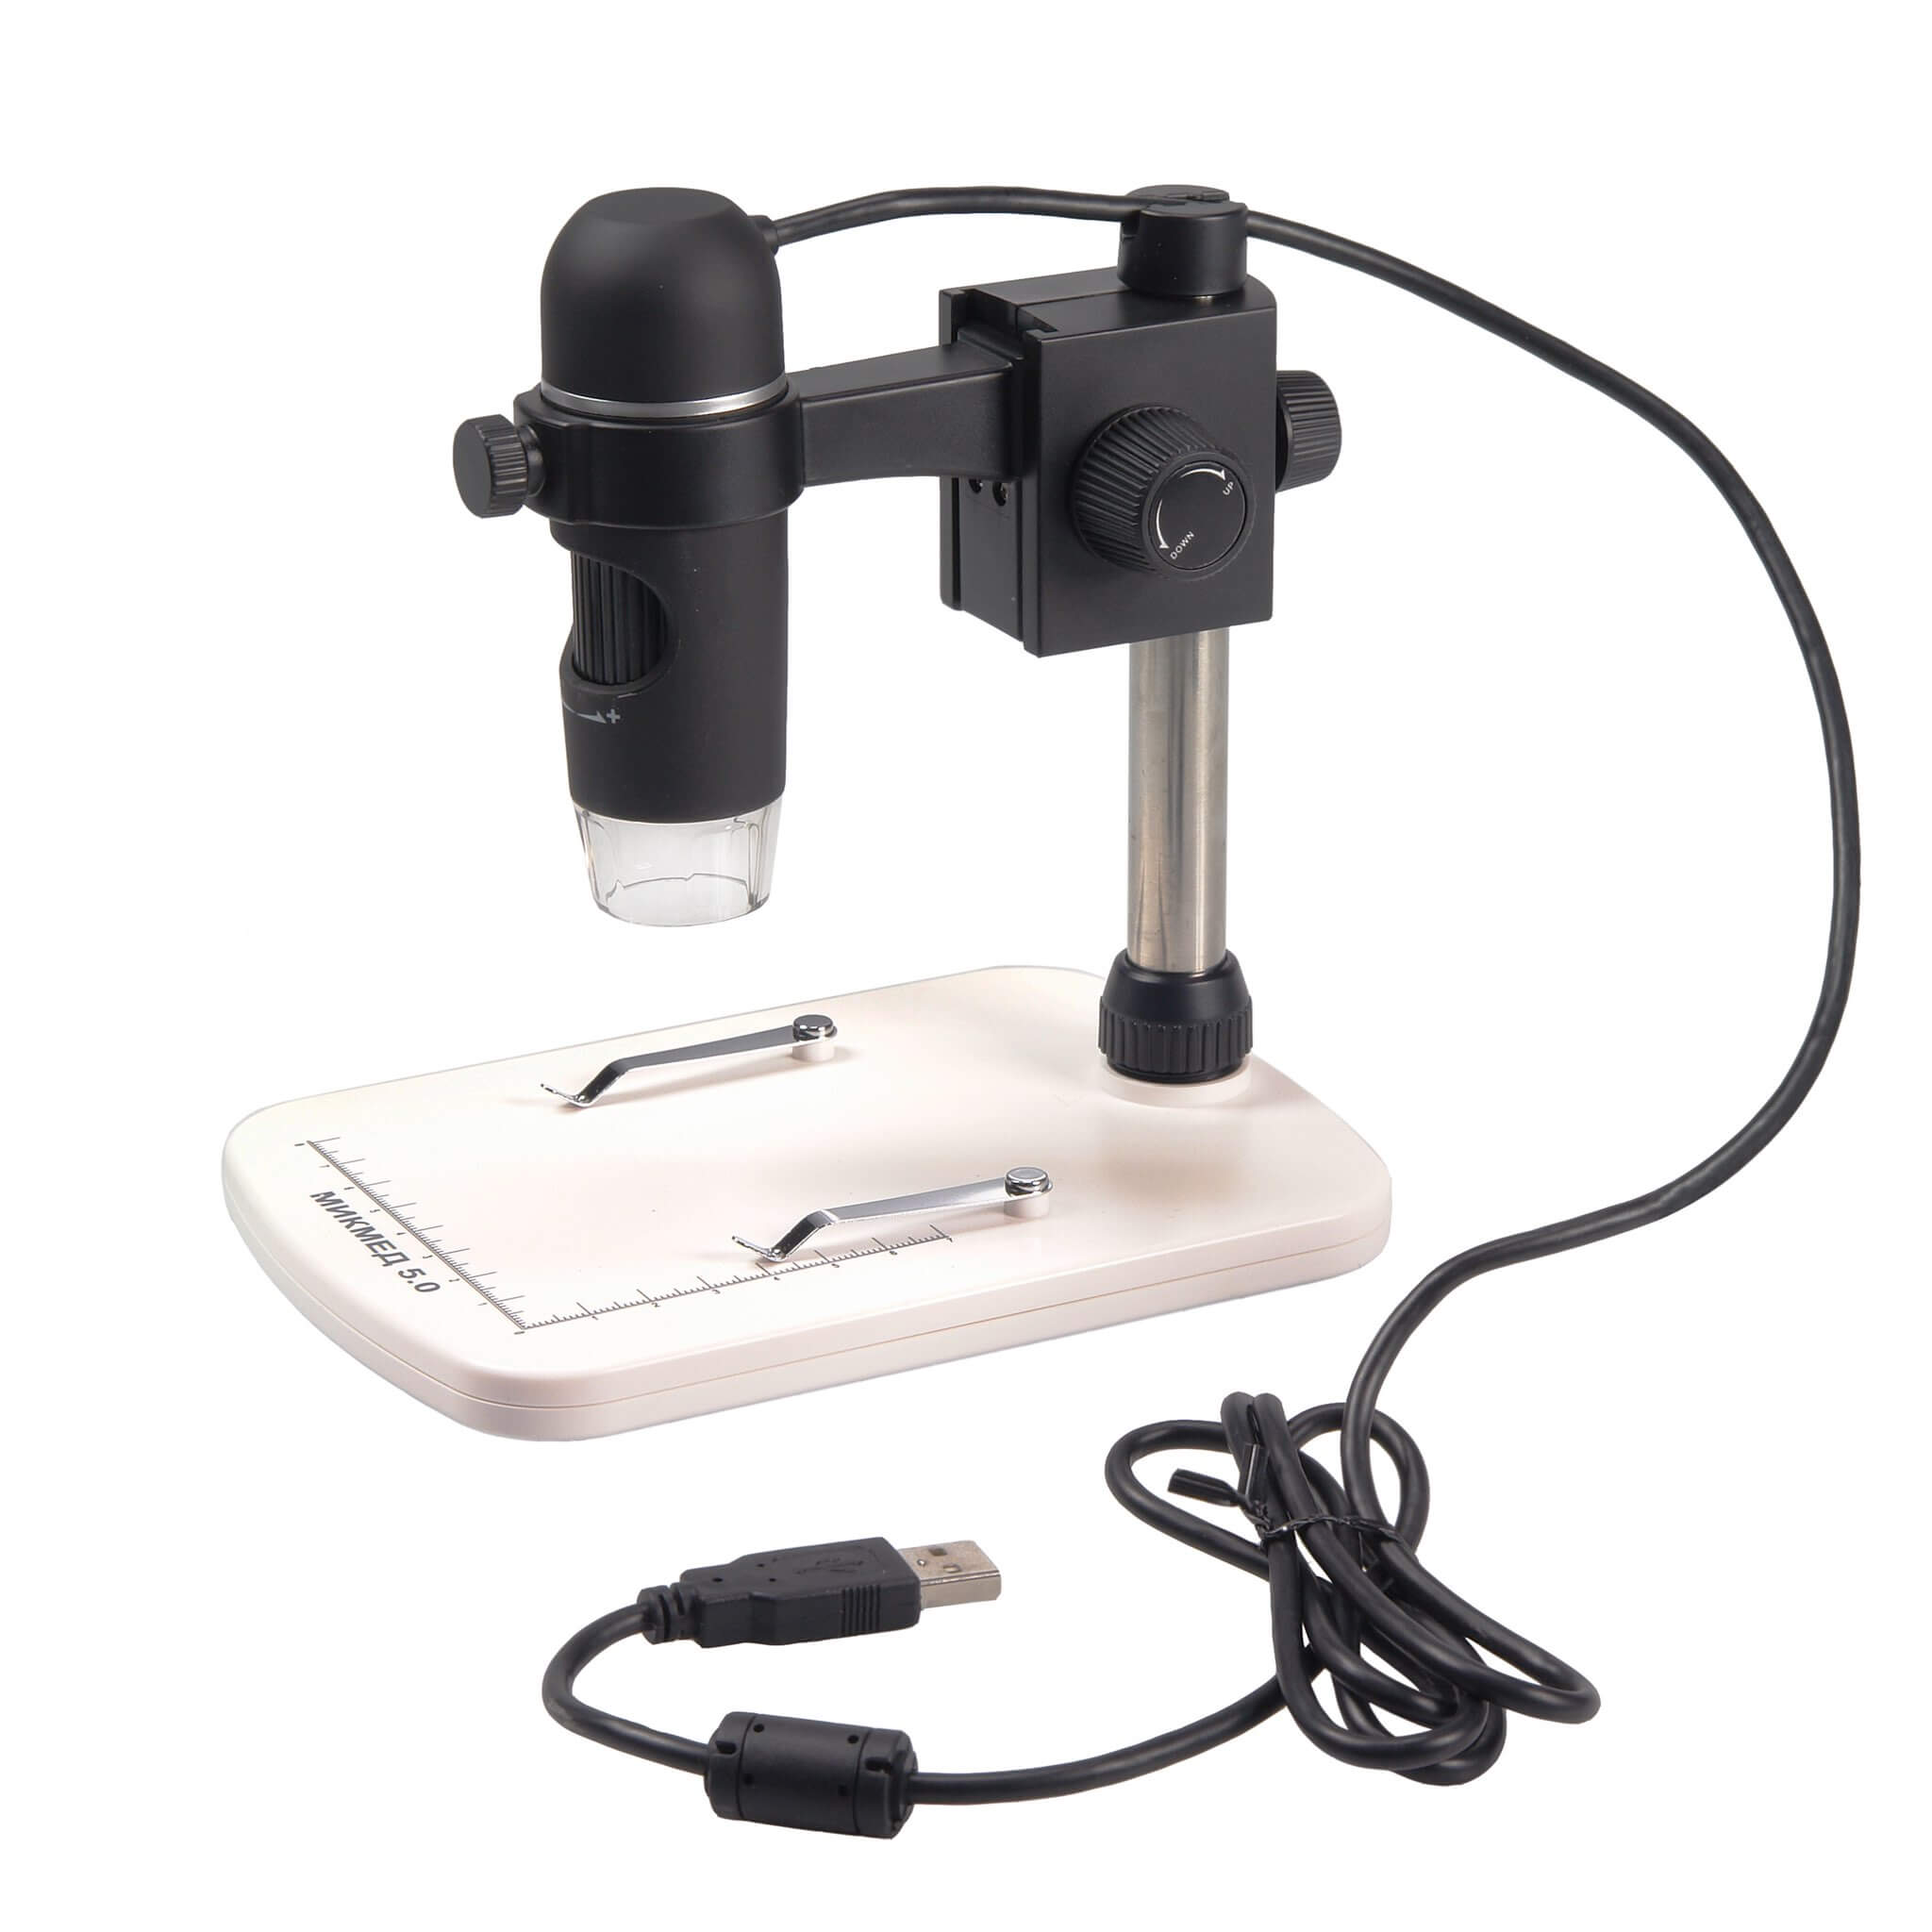 Микроскоп цифровой USB со штативом МИКРОМЕД МИКМЕД 5.0 Микроскопы и лупы